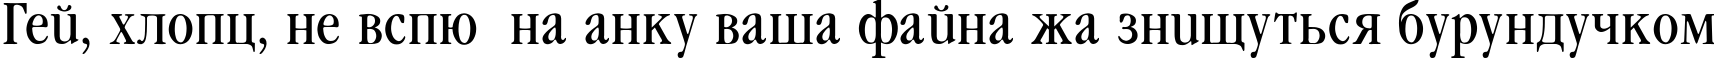 Пример написания шрифтом Garamond_Condenced-Normal текста на украинском